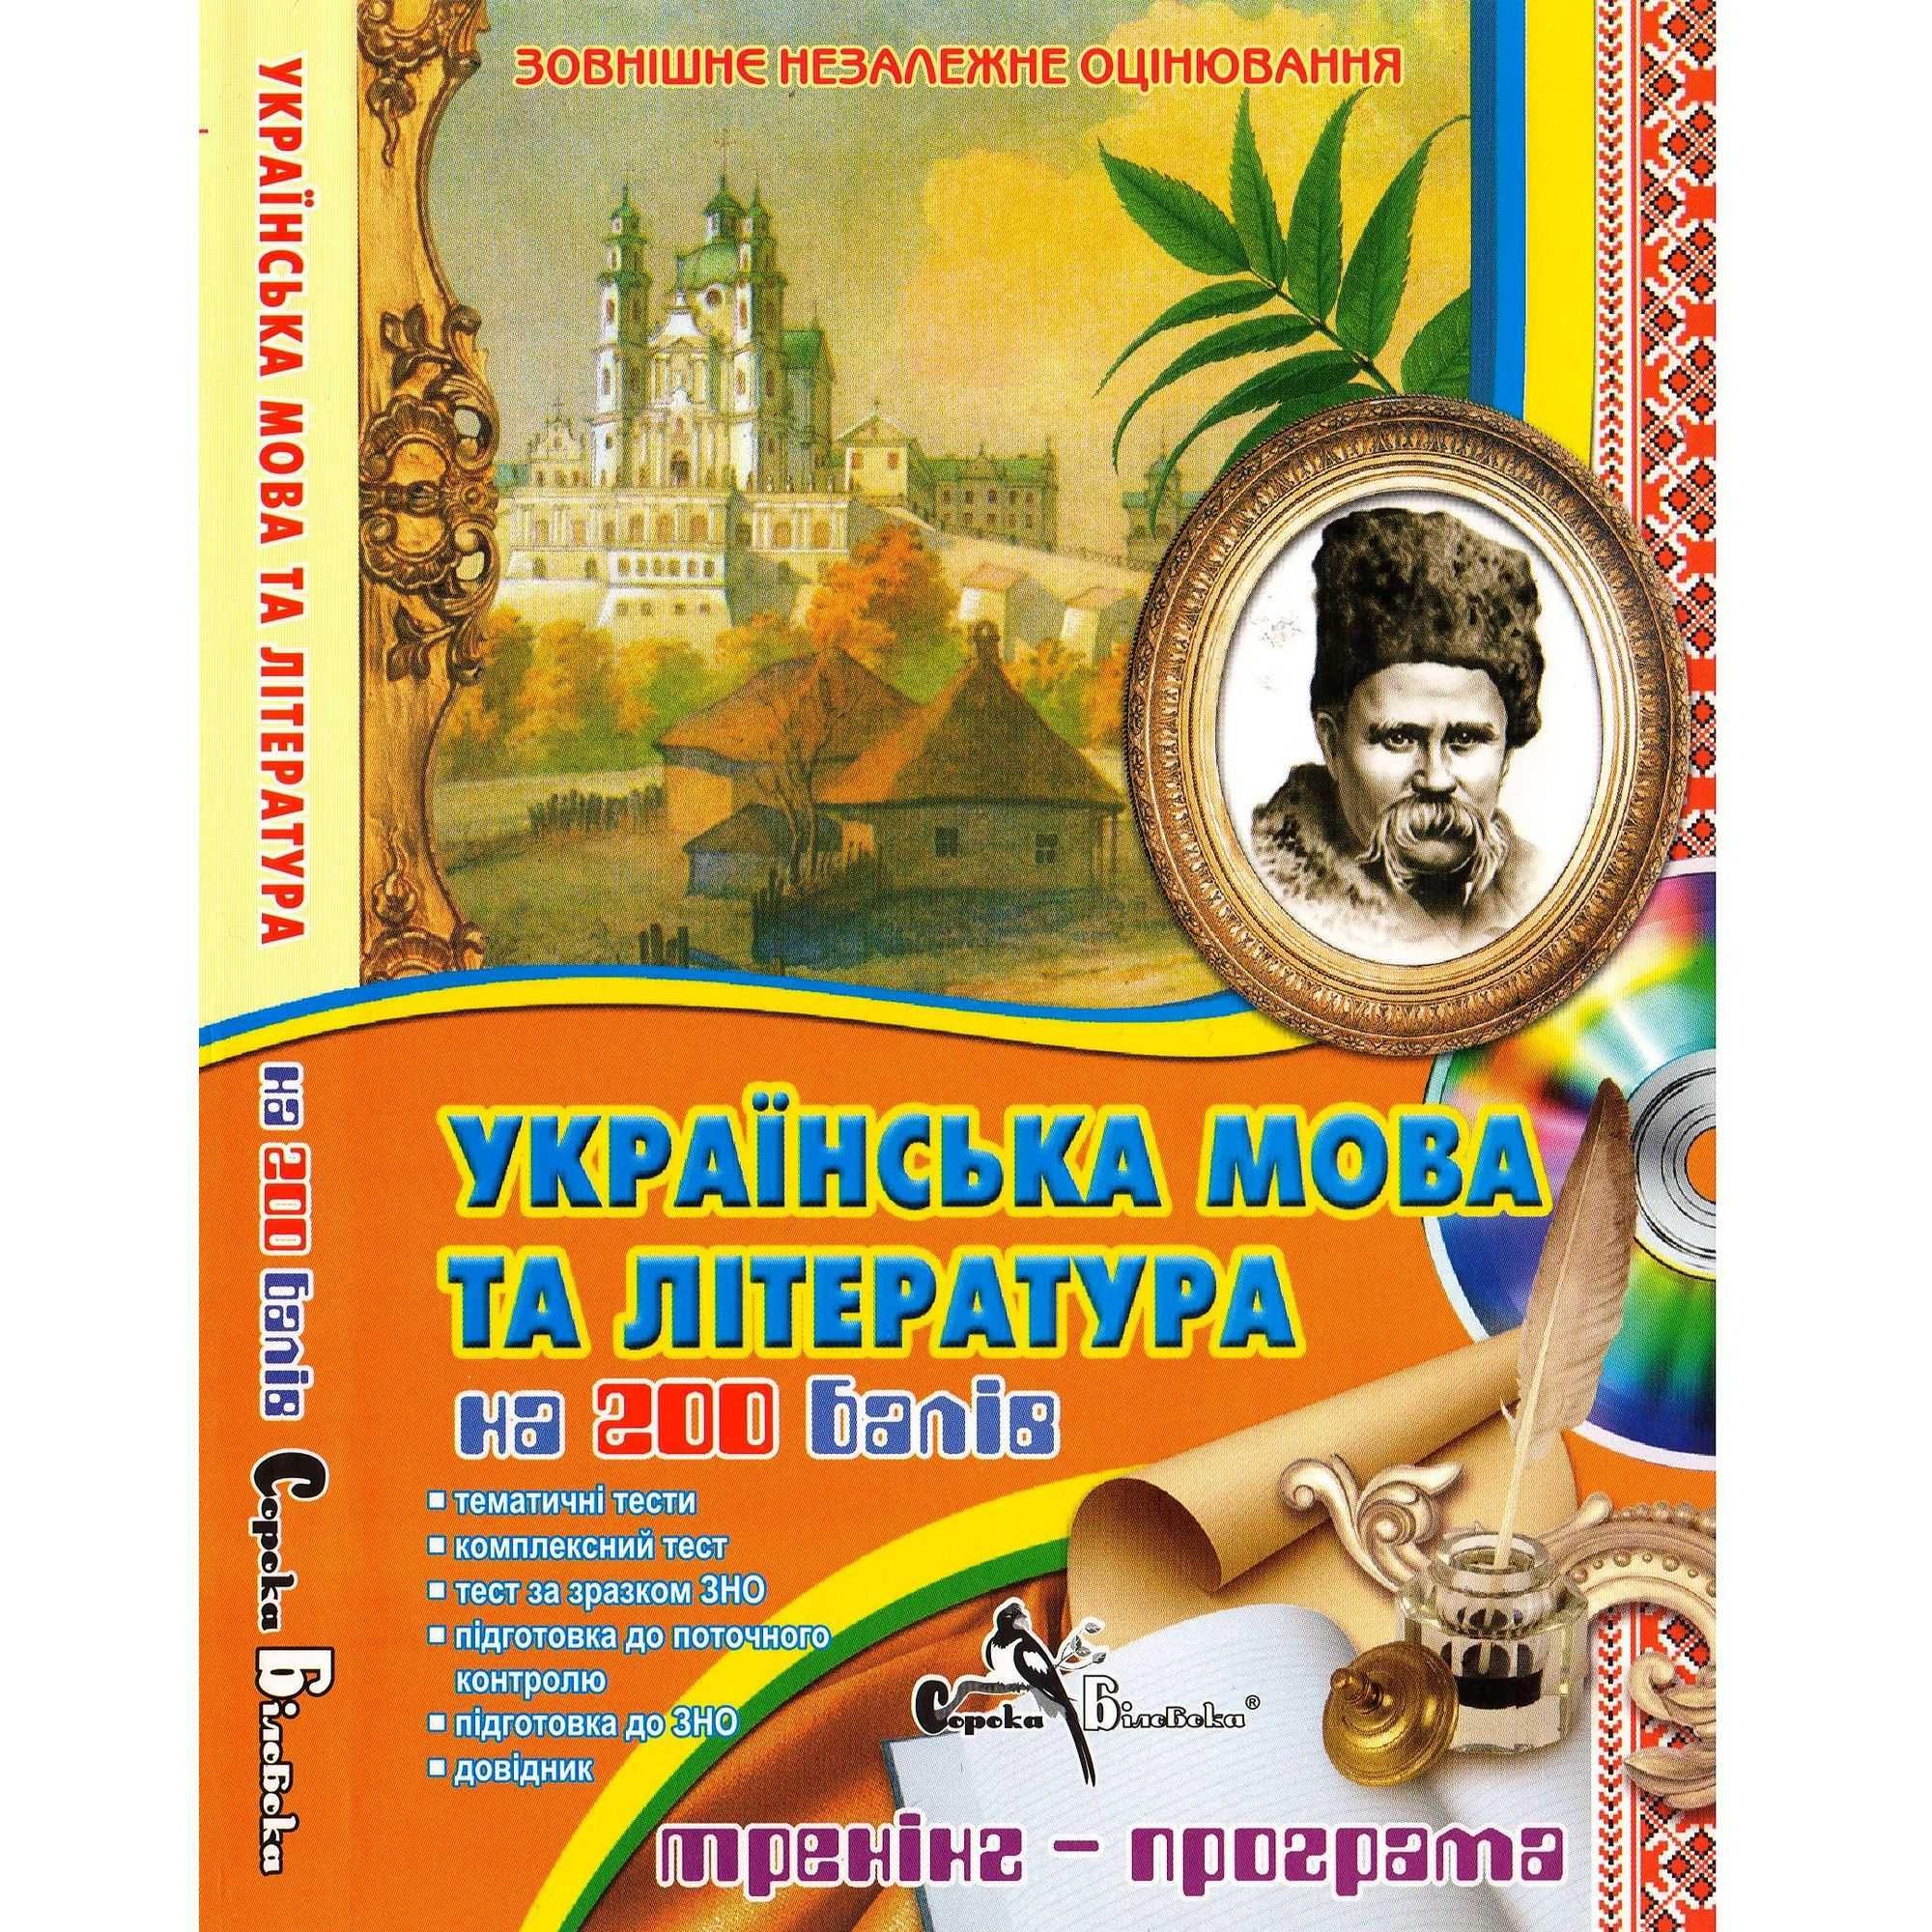 ЗНО Украинский язык и литература. Как новый!